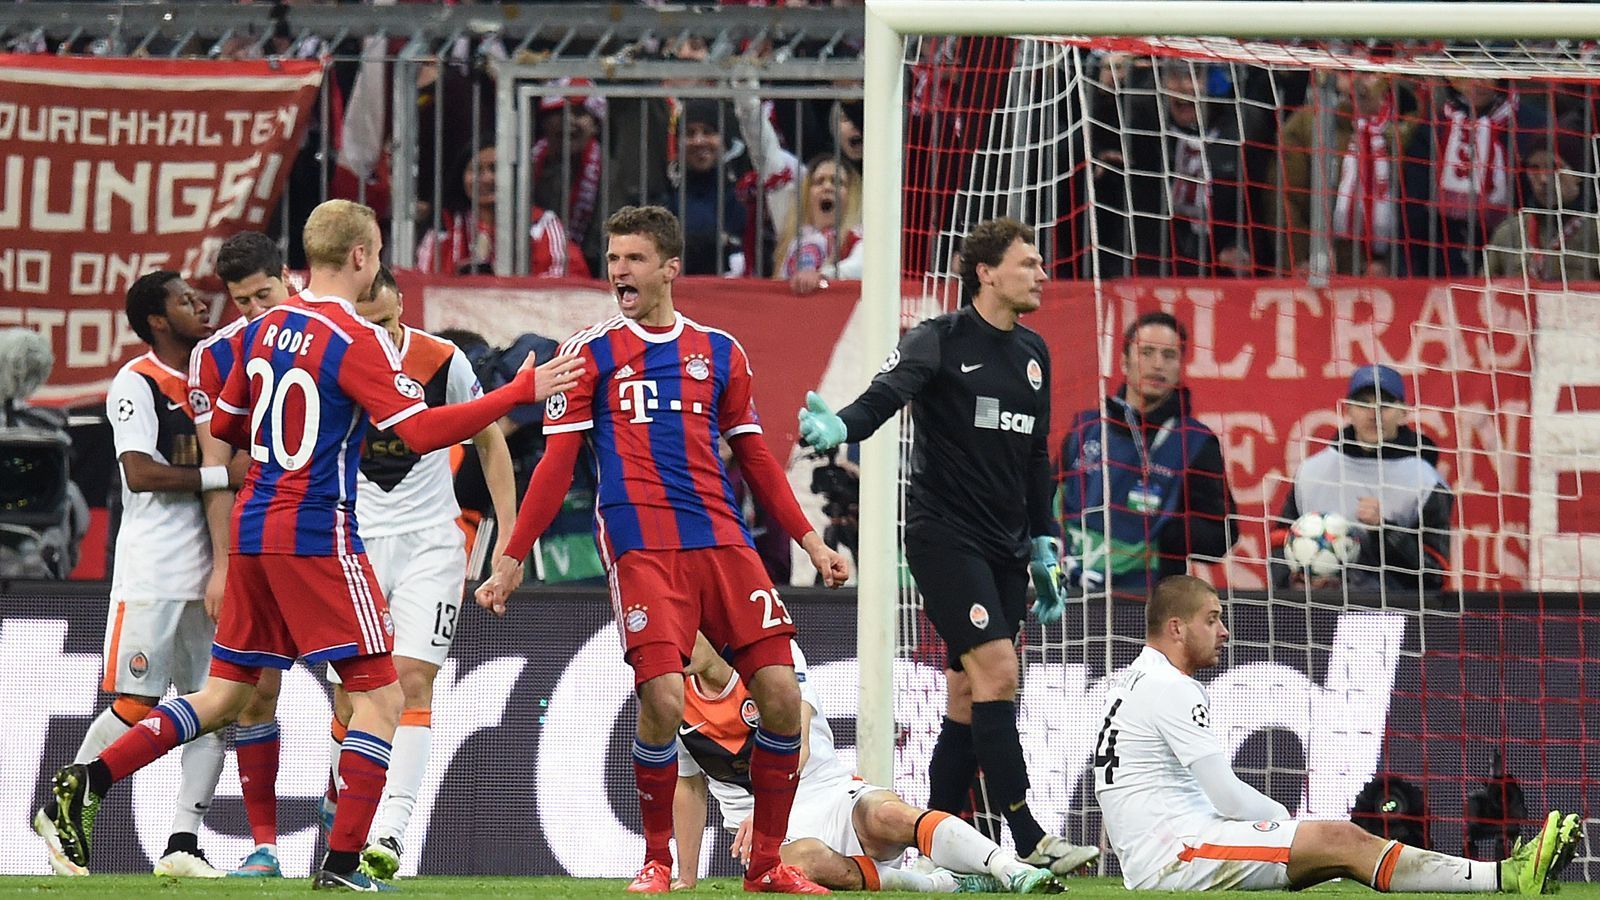 
                <strong>FC Bayern München - Shakhtar Donetsk 7:0 (11. März 2015)</strong><br>
                Nach einem enttäuschenden 0:0 im Achtelfinal-Hinspiel dreht das Guardiola-Team im Rückspiel auf. Fünf Tore im zweiten Durchgang sichern am Ende souverän den Einzug ins Viertelfinale.
              